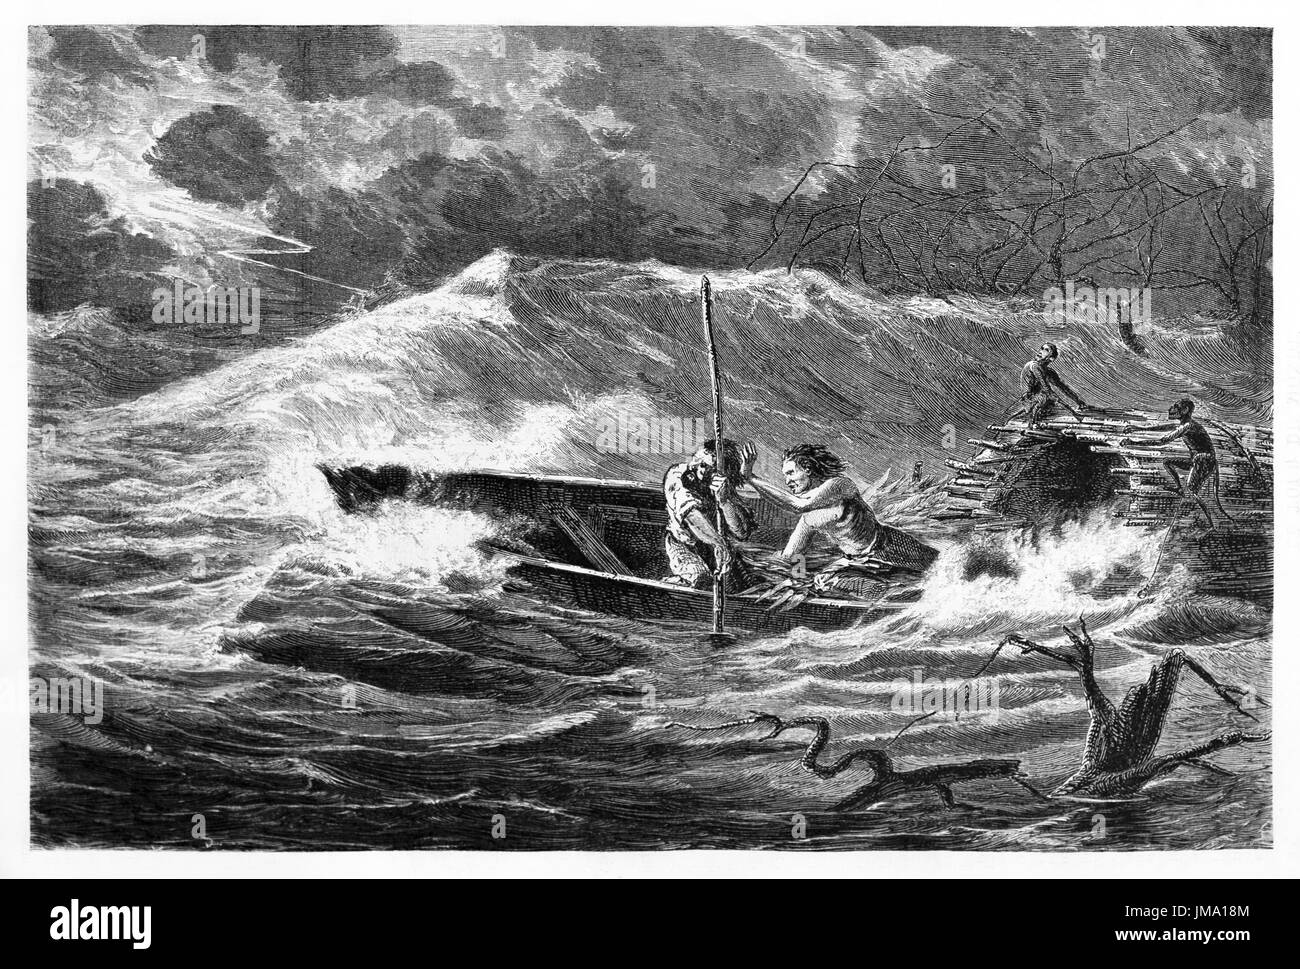 Vieille illustration d'un bateau sur l'Amazone, au cours d'une tempête. Créé par Riou, Biard et Therington, publié sur le Tour du Monde, Paris, 1861. Banque D'Images